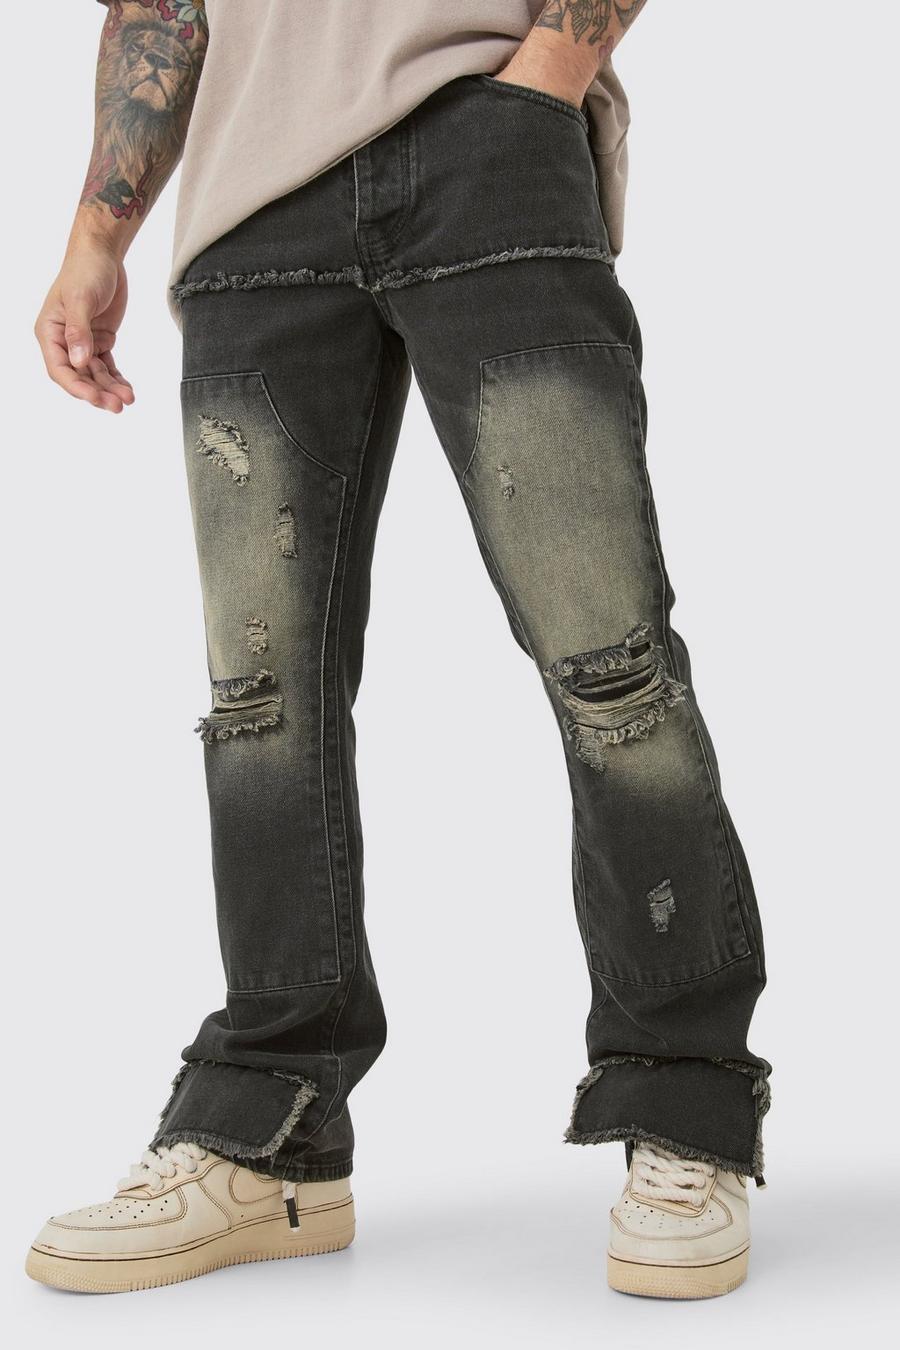 Jeans Slim Fit in denim rigido sovratinto stile Carpenter con strappi e gamba a zampa, Brown